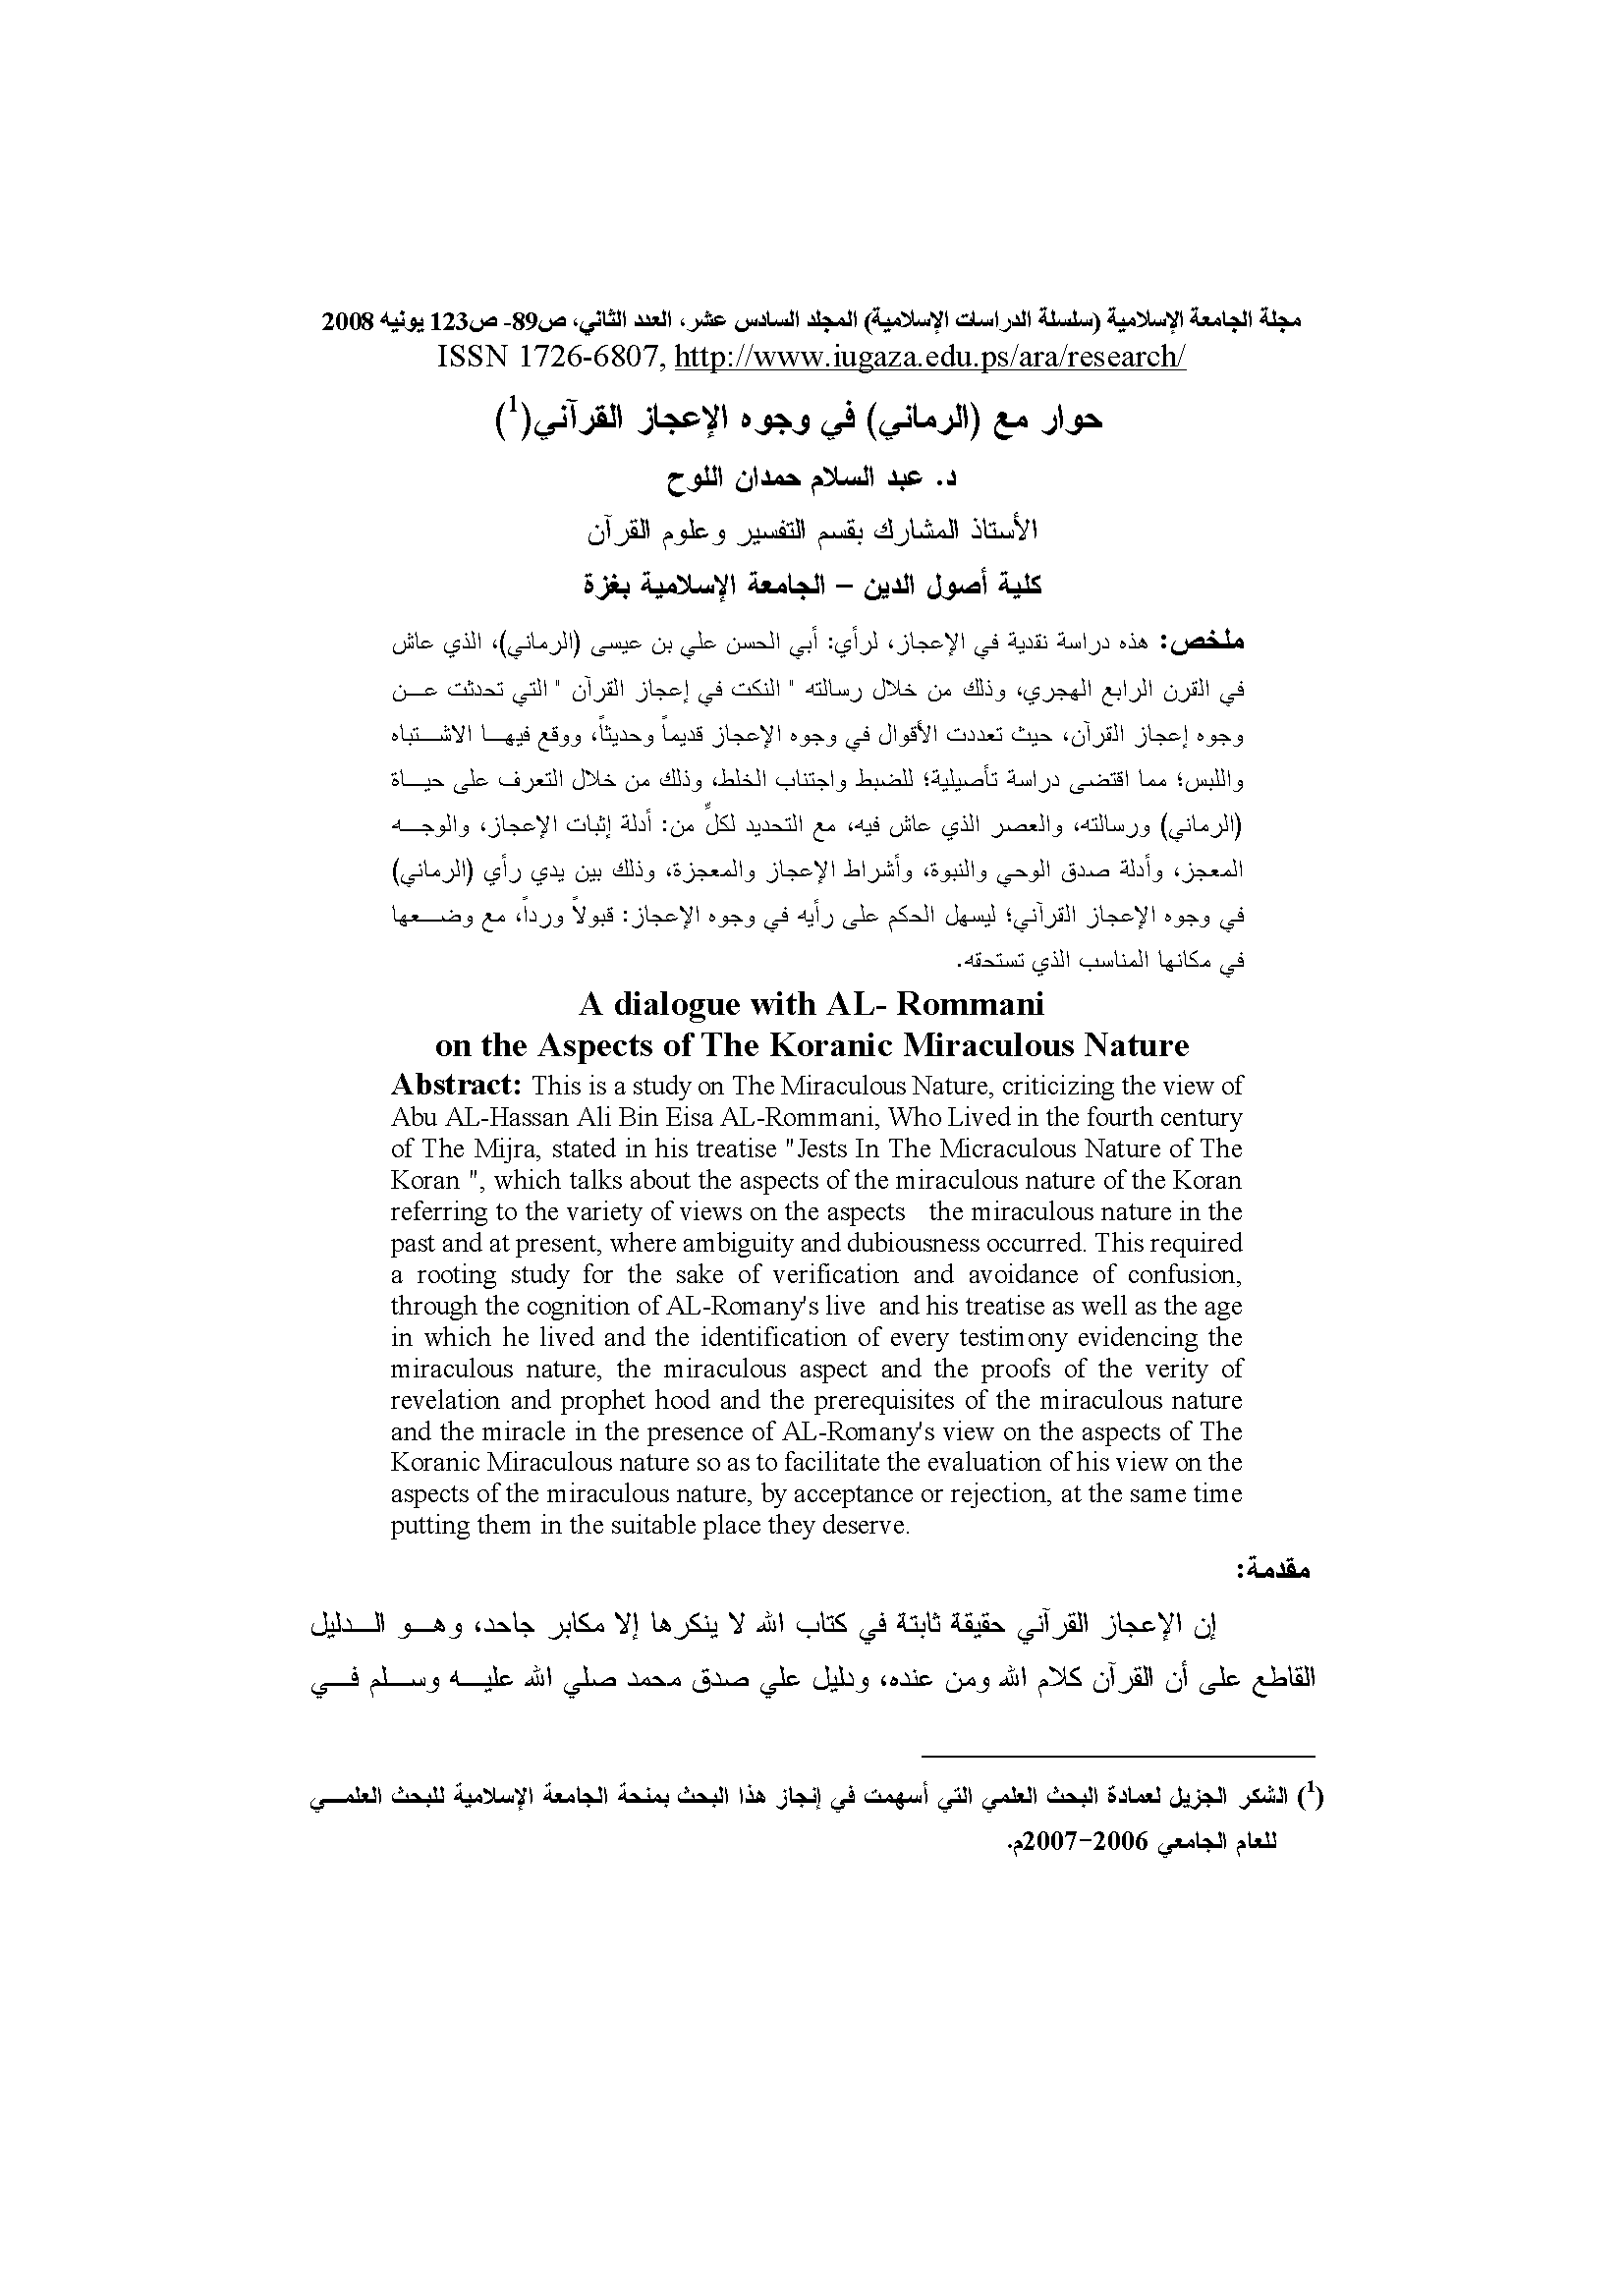 تحميل كتاب حوار مع (الرماني) في وجوه الإعجاز القرآني لـِ: الدكتور عبد السلام حمدان عودة اللوح